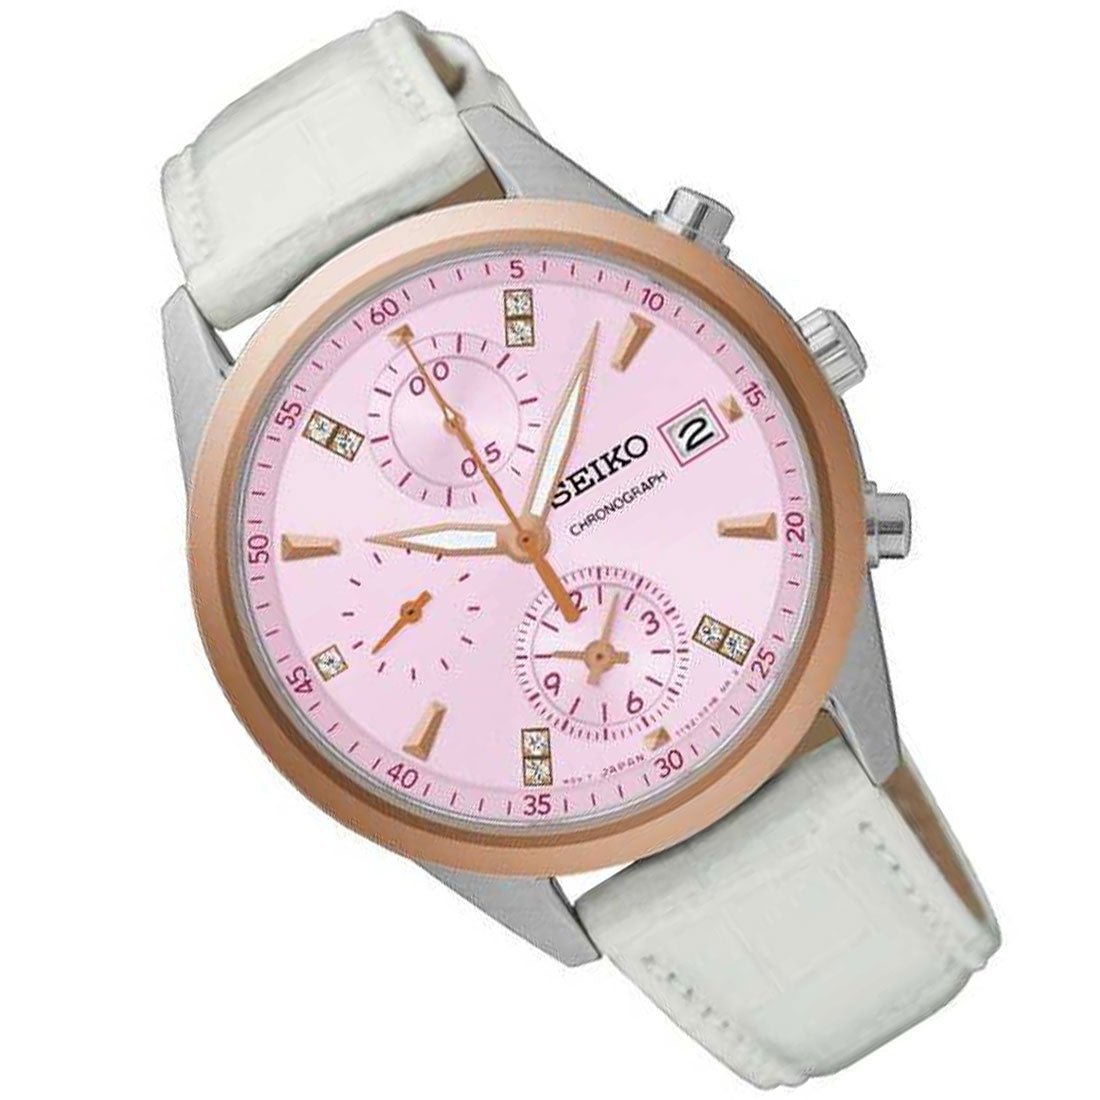 Seiko Womens SNDV50P1 SNDV50 Chronograph Pink Dial Leather Watch -Seiko